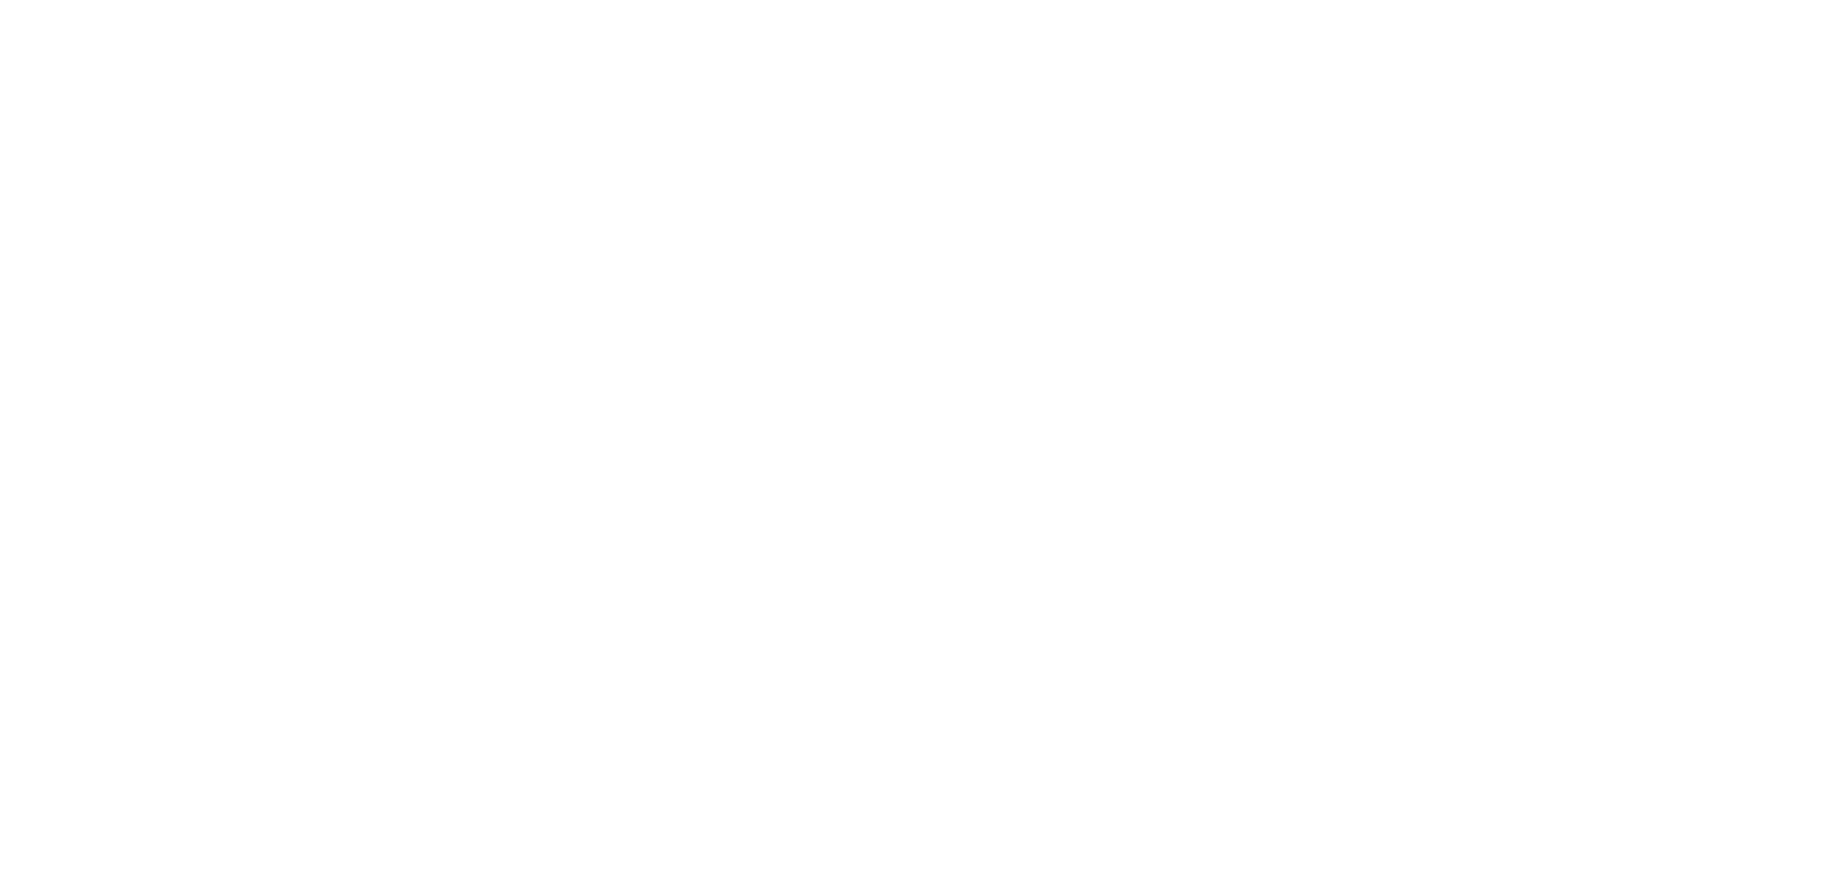 HomeTeam Pest Defense Logo